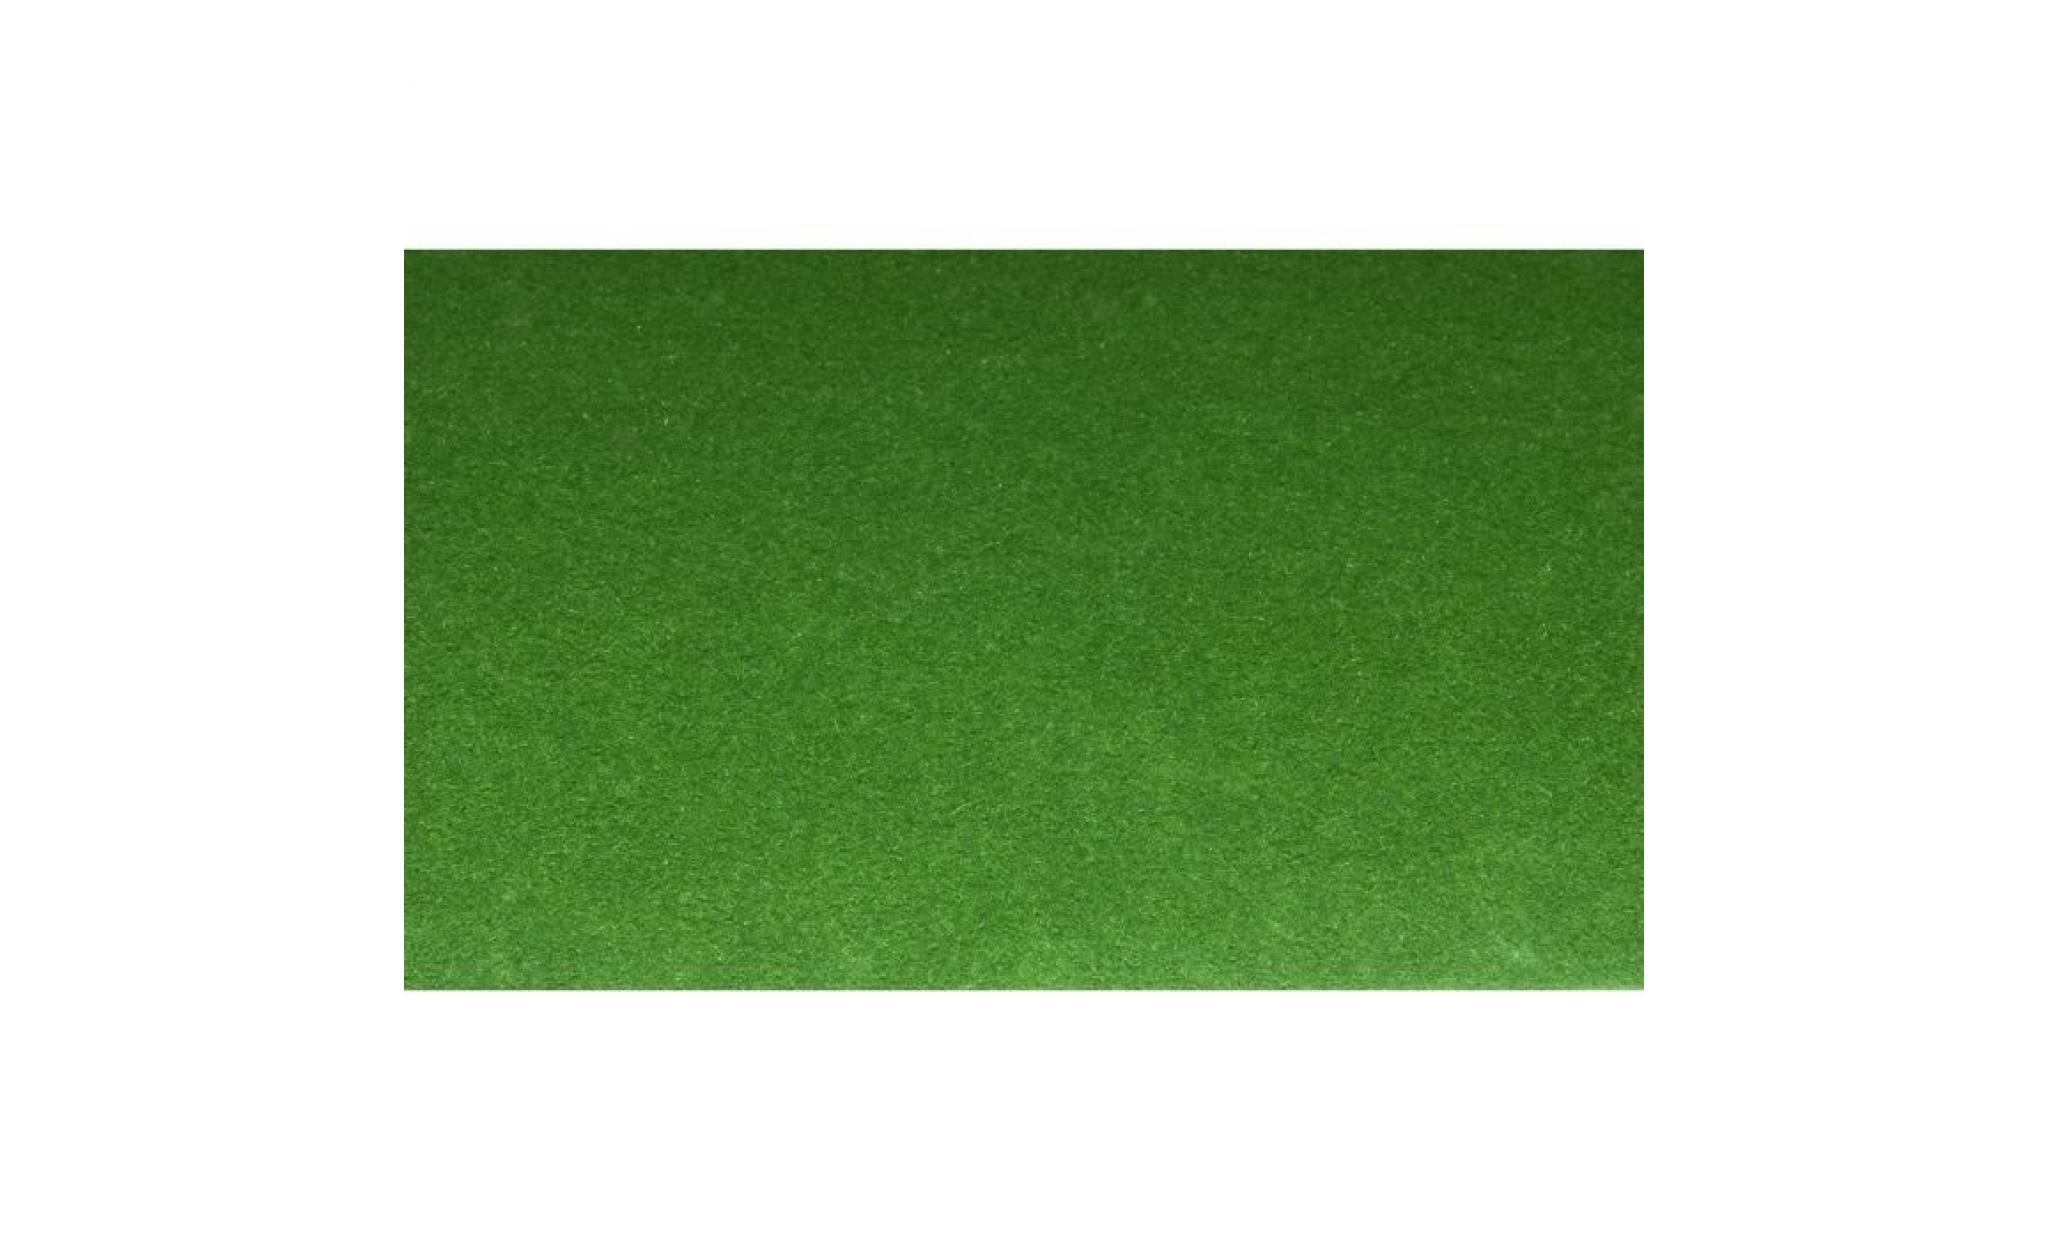 exelgreen moquette imitation gazon synthétique primo   5 mm   1 x 4 m pas cher